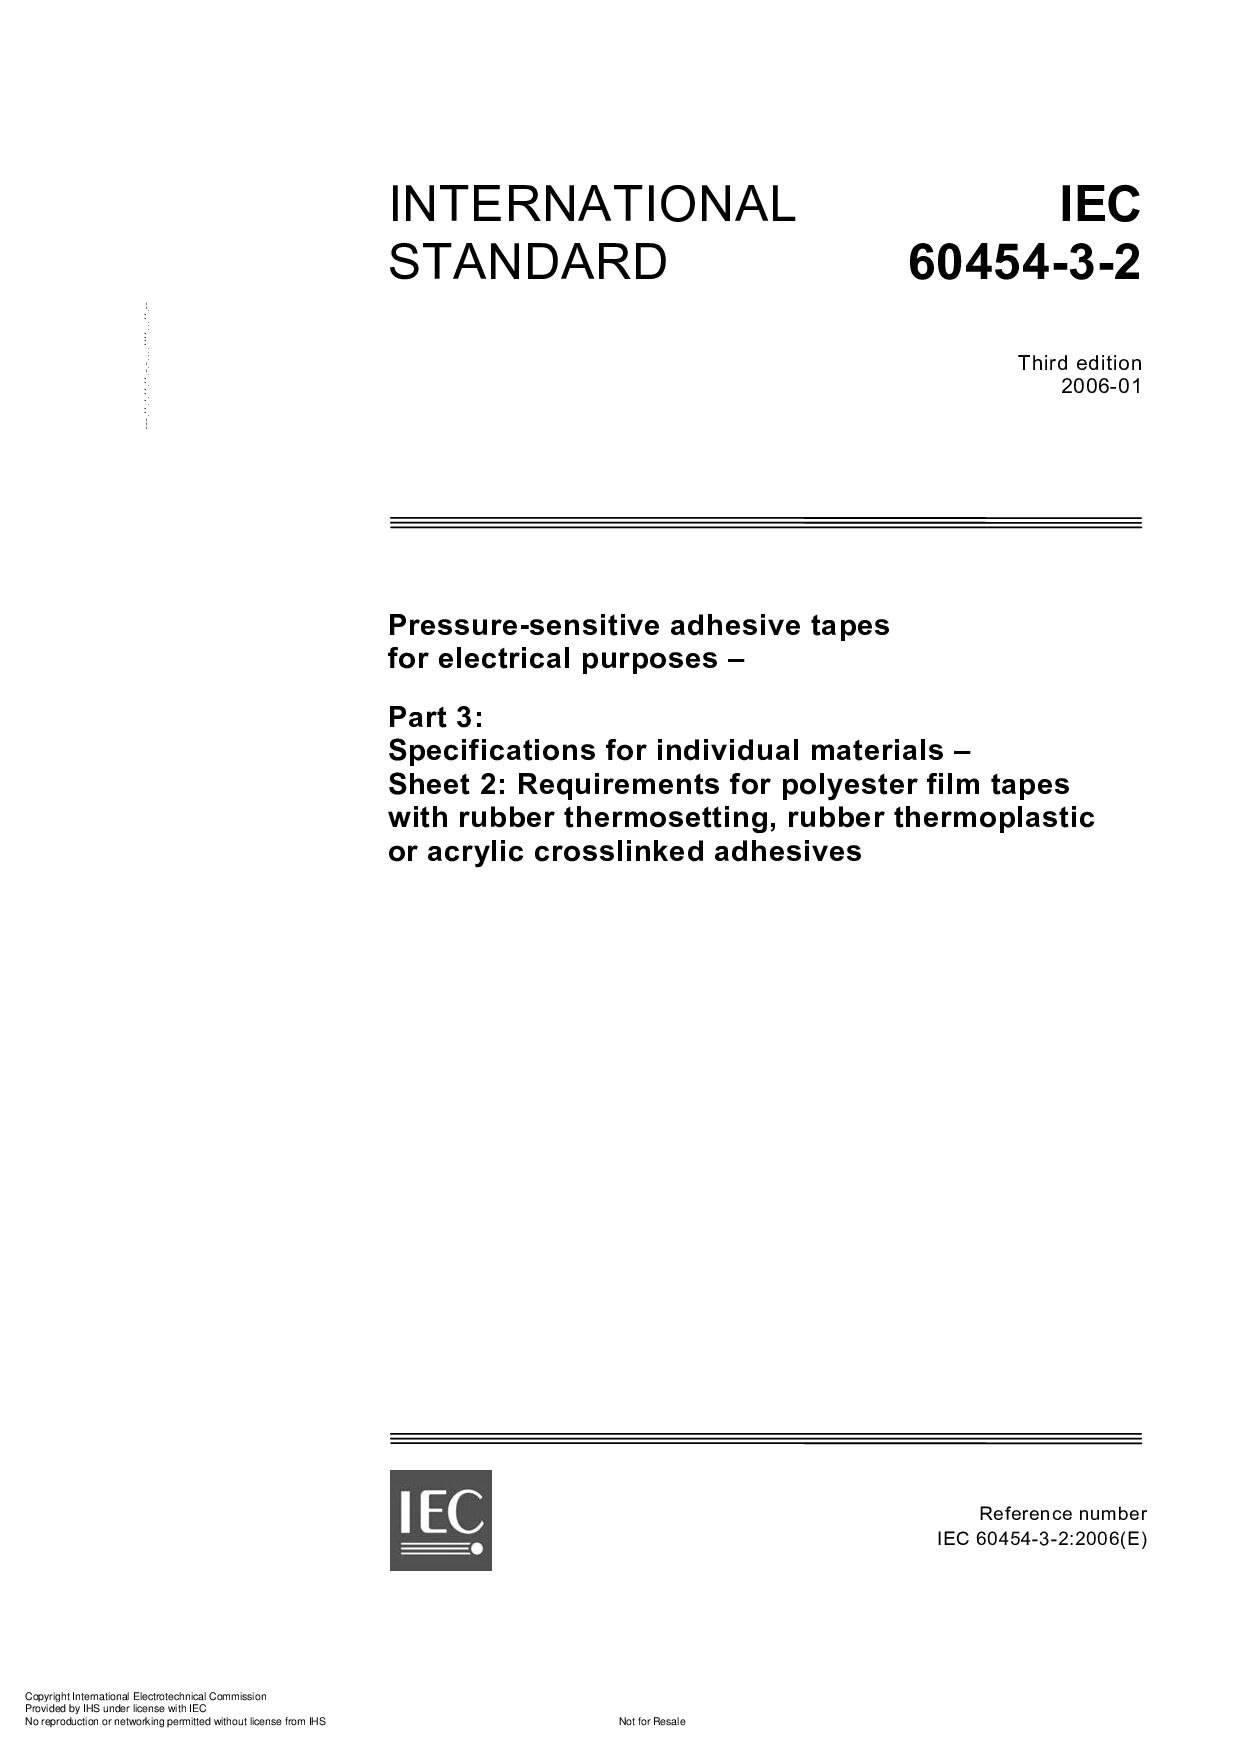 IEC 60454-3-2:2006封面图